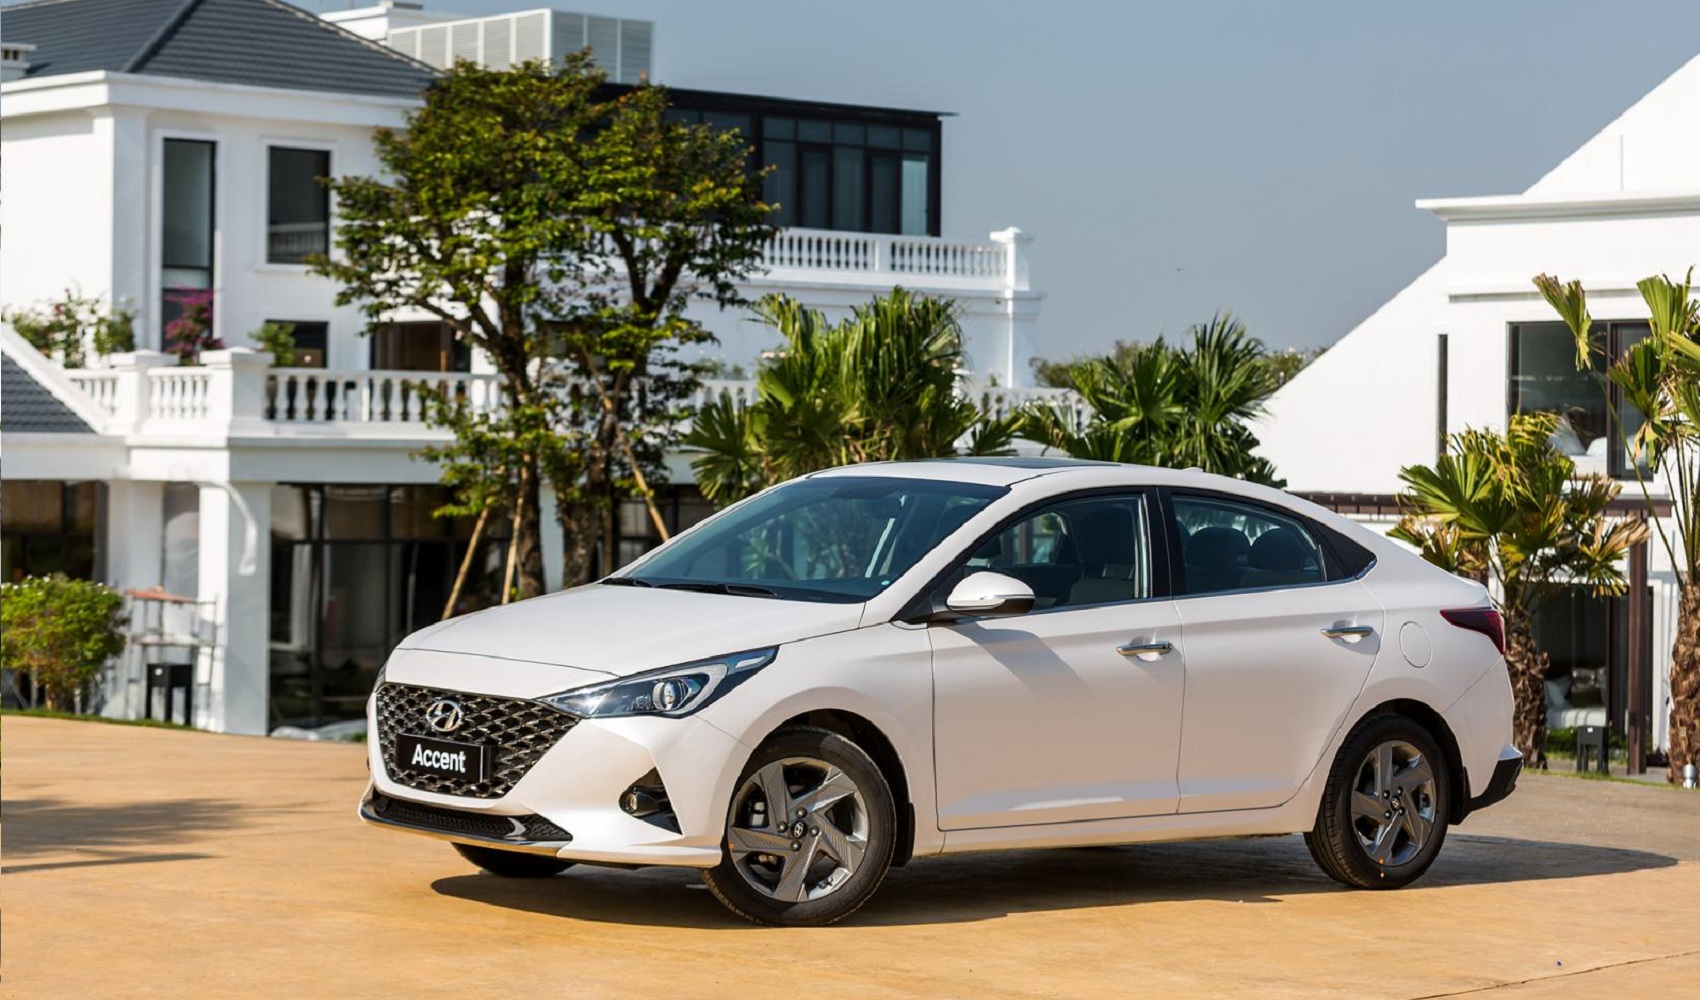 Phân khúc Sedan hạng B lại hụt hơi, doanh số Hyundai Accent giảm mạnh